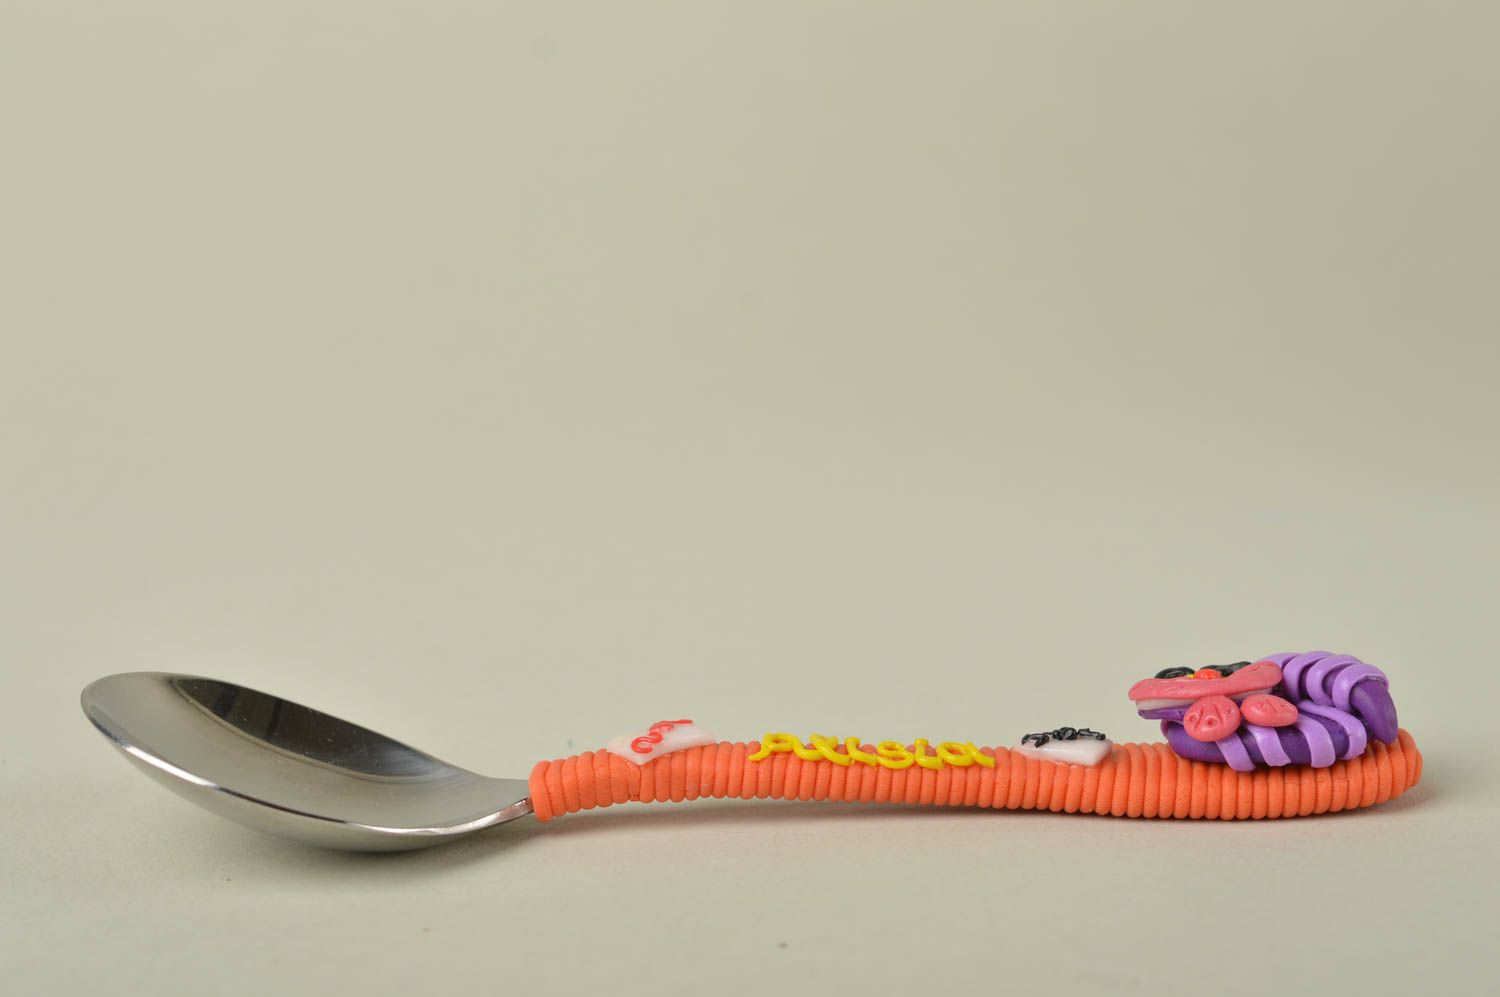 Handmade tableware teaspoon with plastic handle decorative spoon steel spoon photo 3